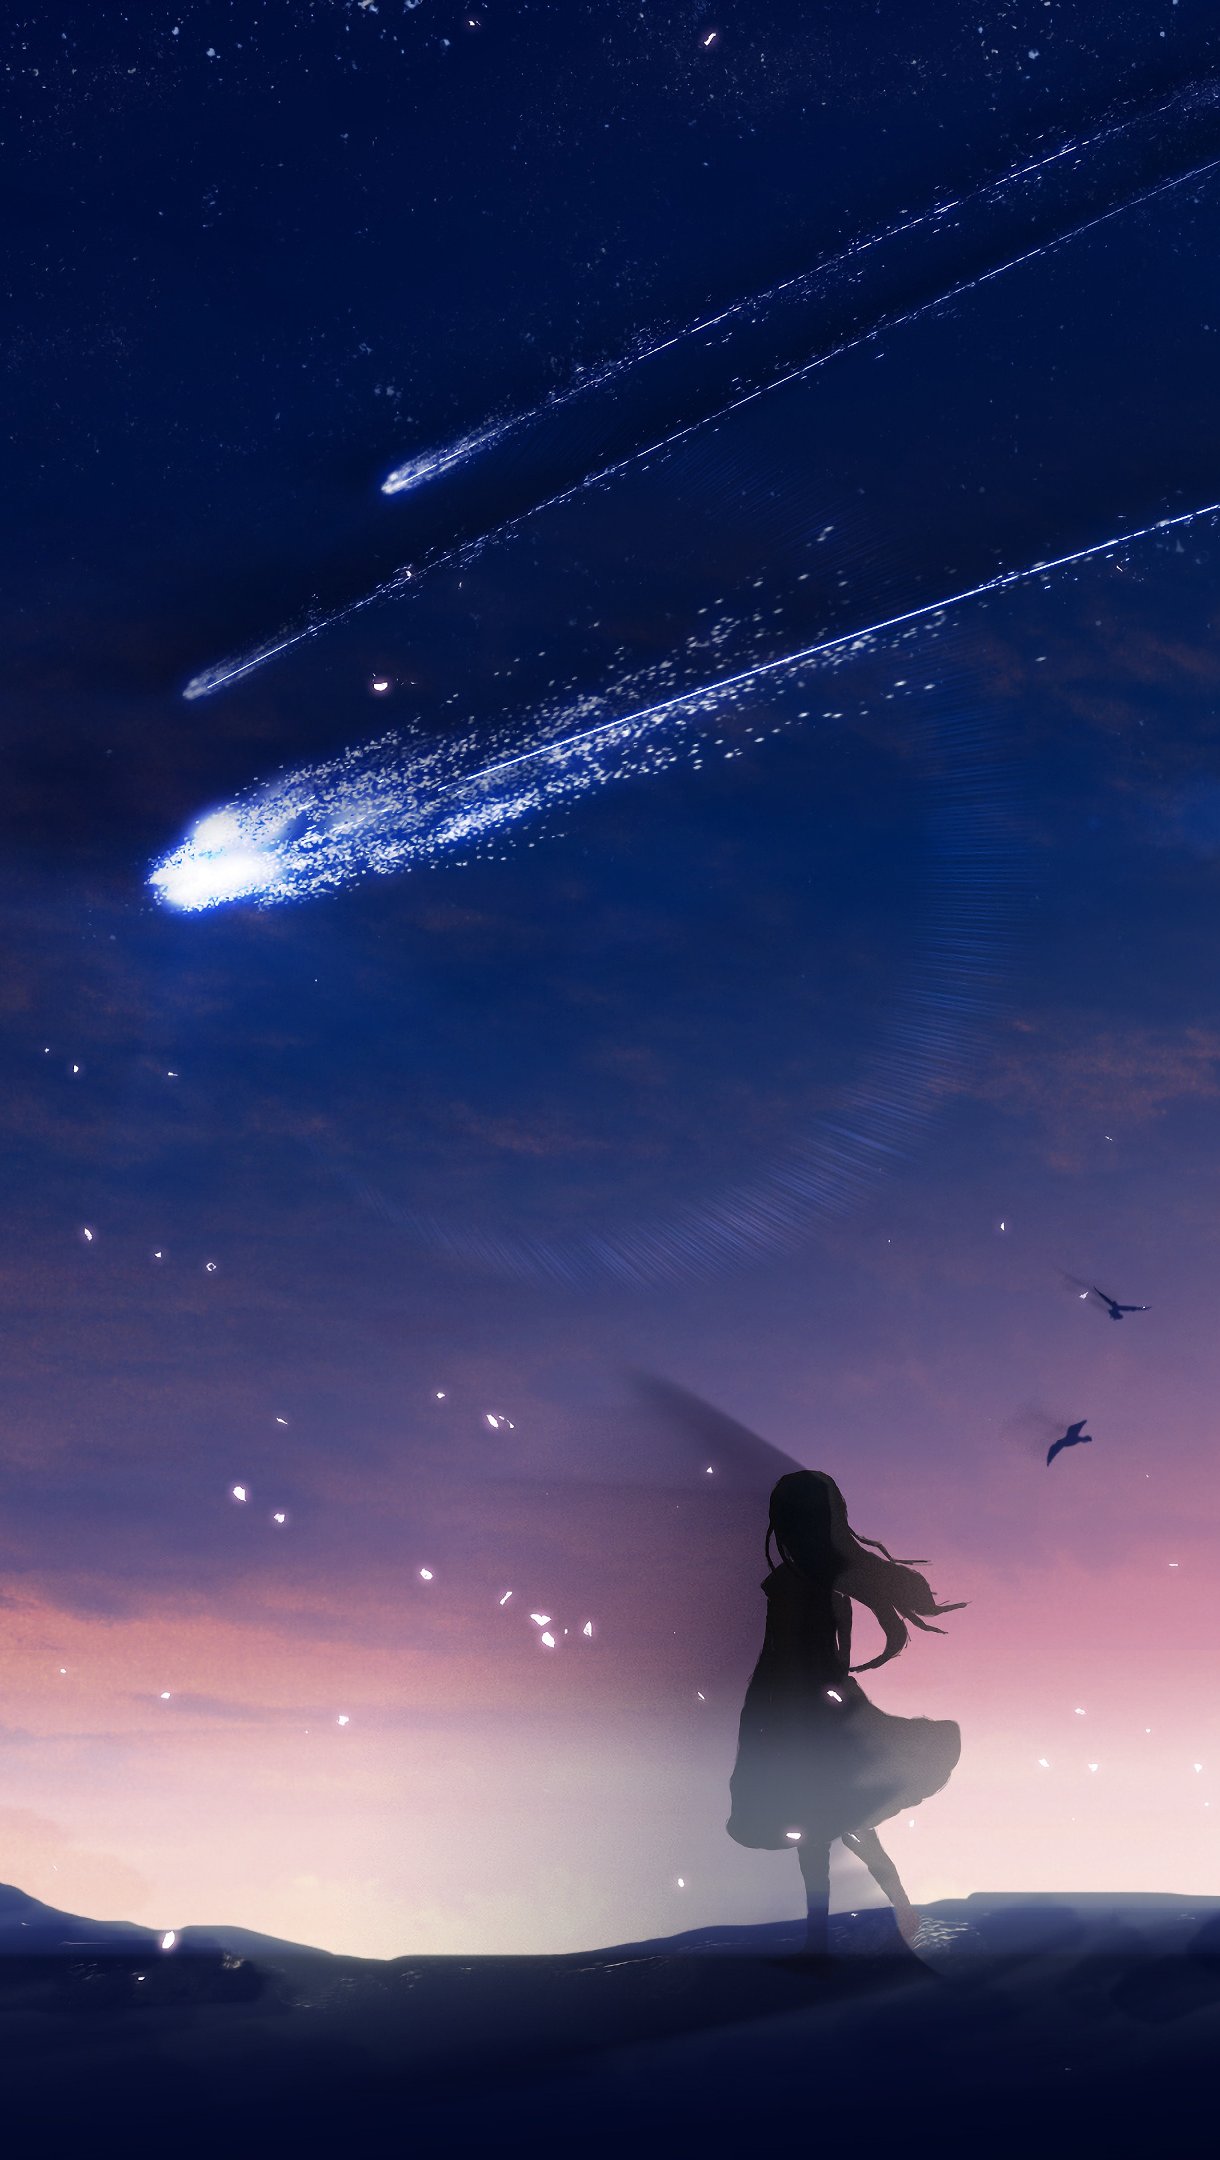 Anime kite in sky dusk Wallpaper 4k Ultra HD ID:3042